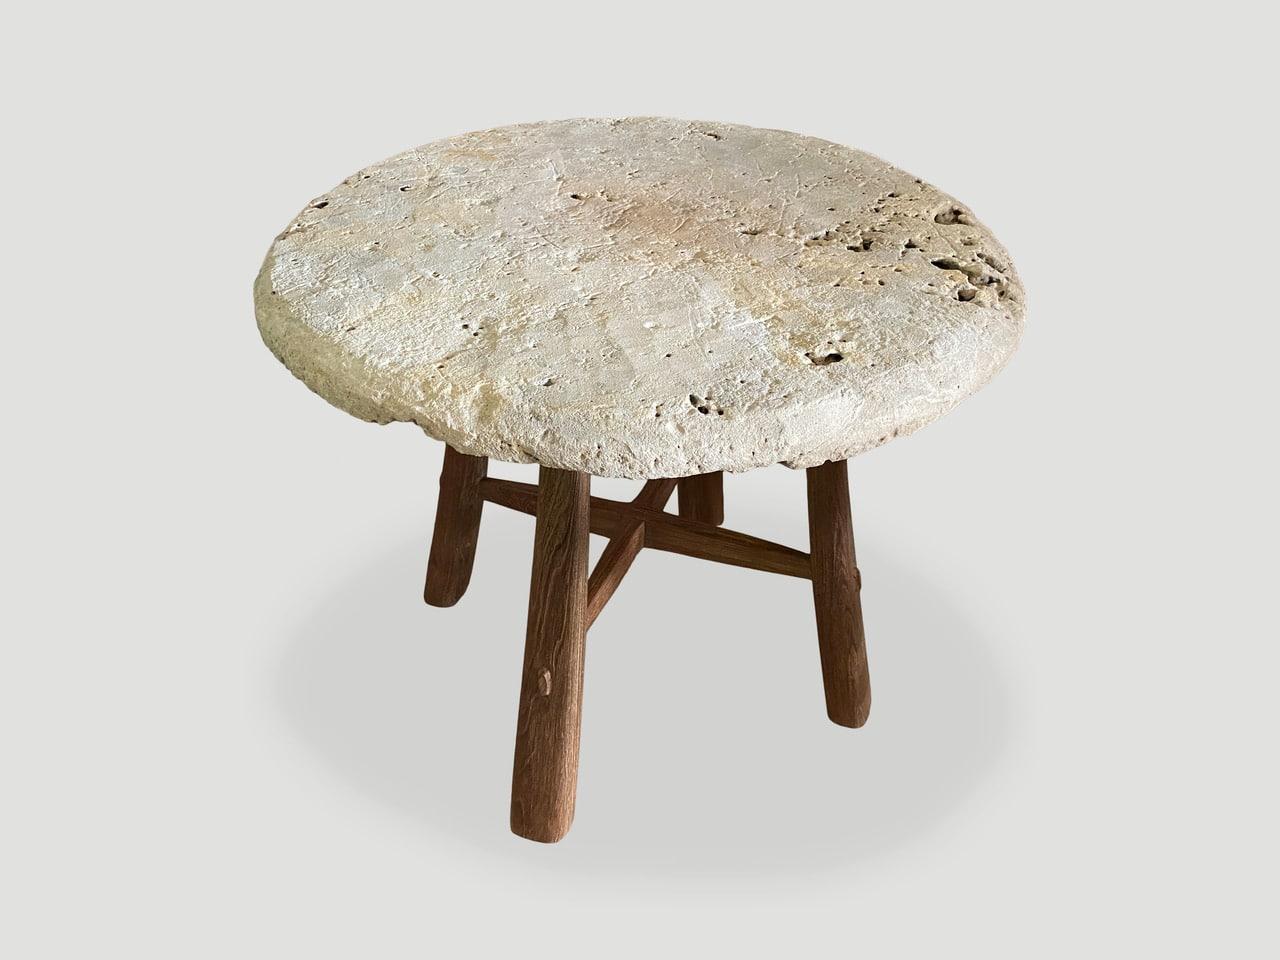 Impressionnante pierre antique de deux pouces d'épaisseur provenant de l'île de Sumba. Nous avons ajouté des pieds en bois de teck de style mid-century en contraste. Parfait comme table d'appoint, table d'entrée ou petite table à manger.